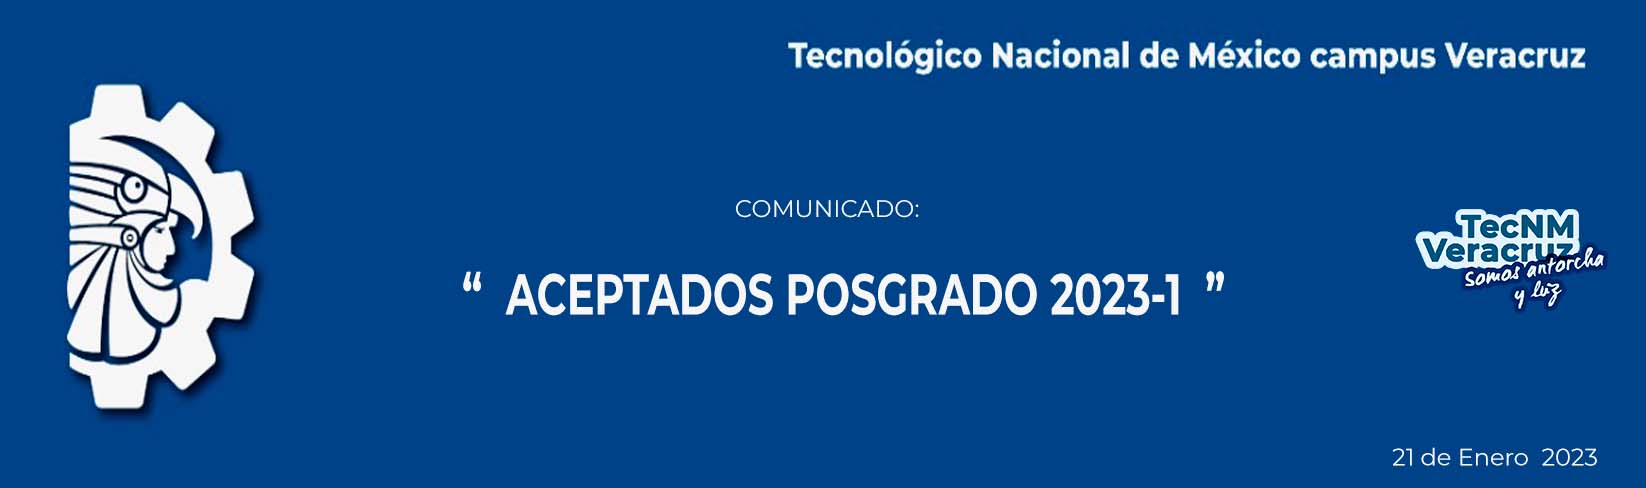 COMUNICADO LISTA DE ASPIRANTES ACEPTADOS POSGRADOS 2023-1